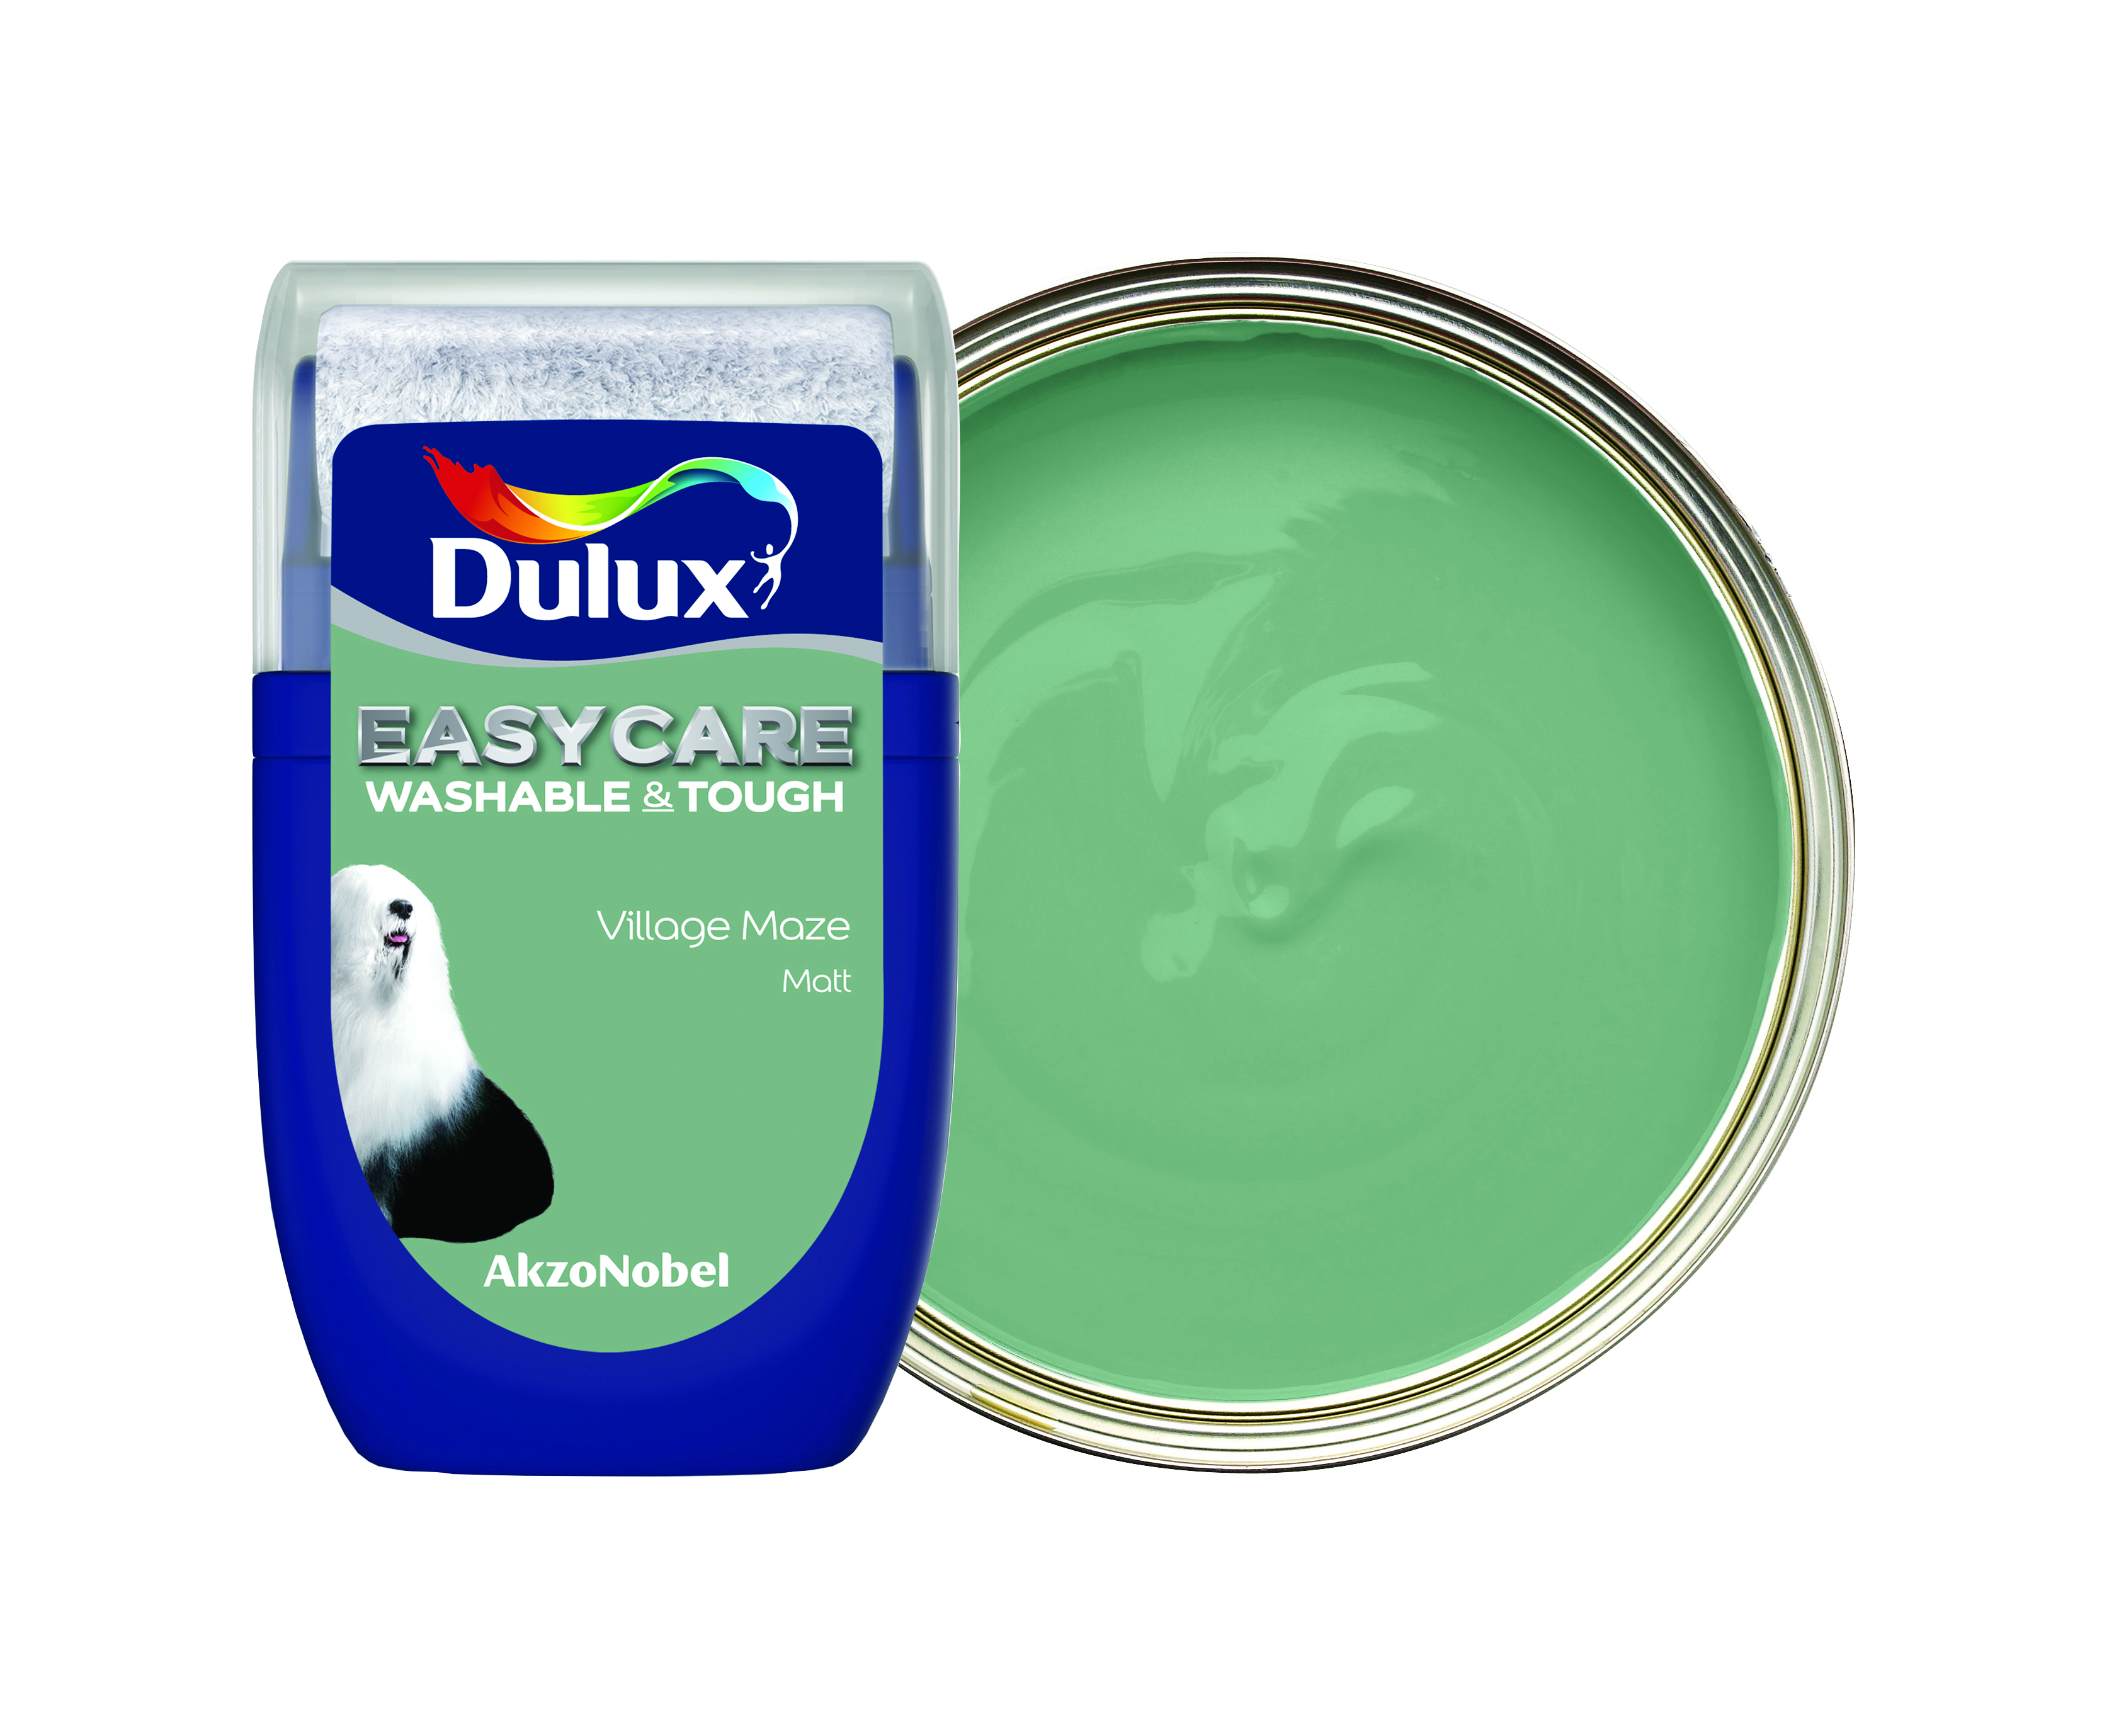 Dulux Easycare Washable & Tough Paint Tester Pot - Village Maze - 30ml